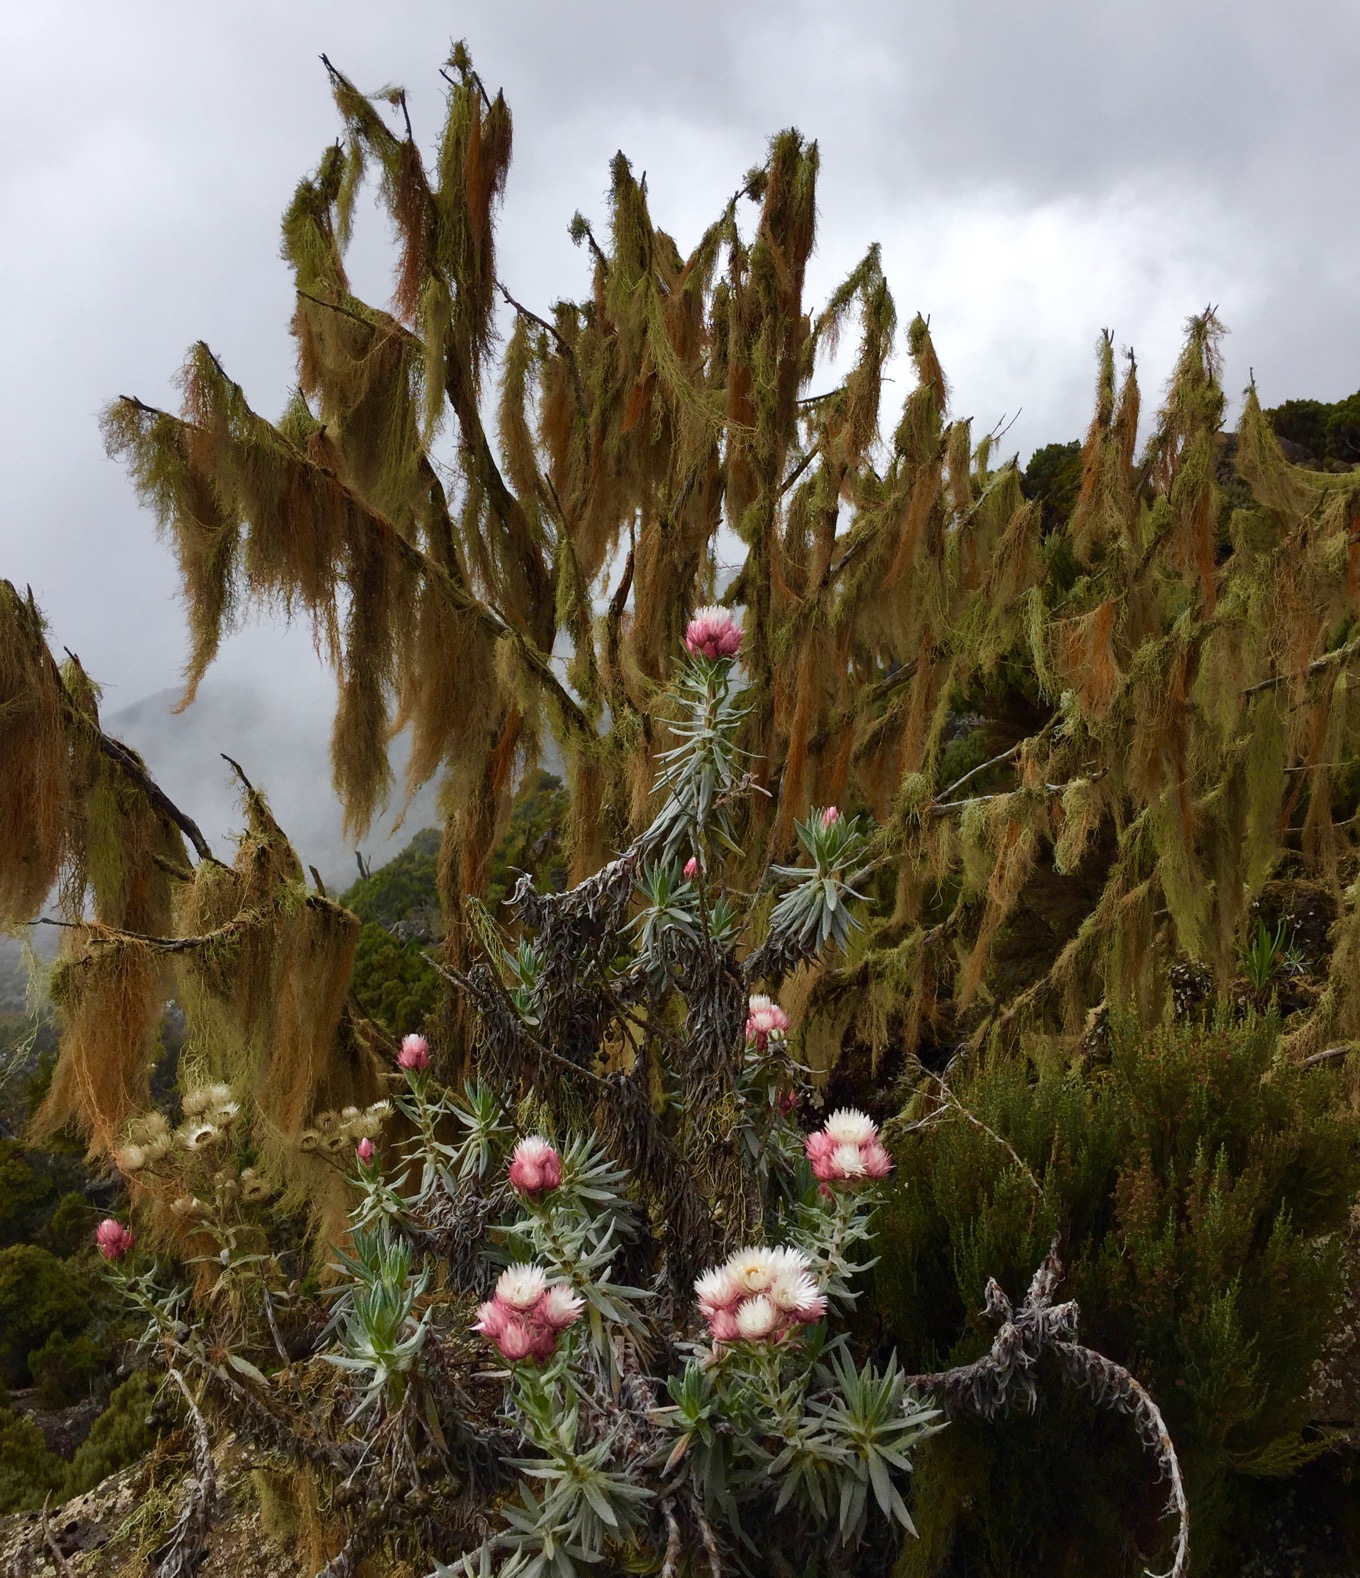 Ferns and mosses at Kilimanjaro